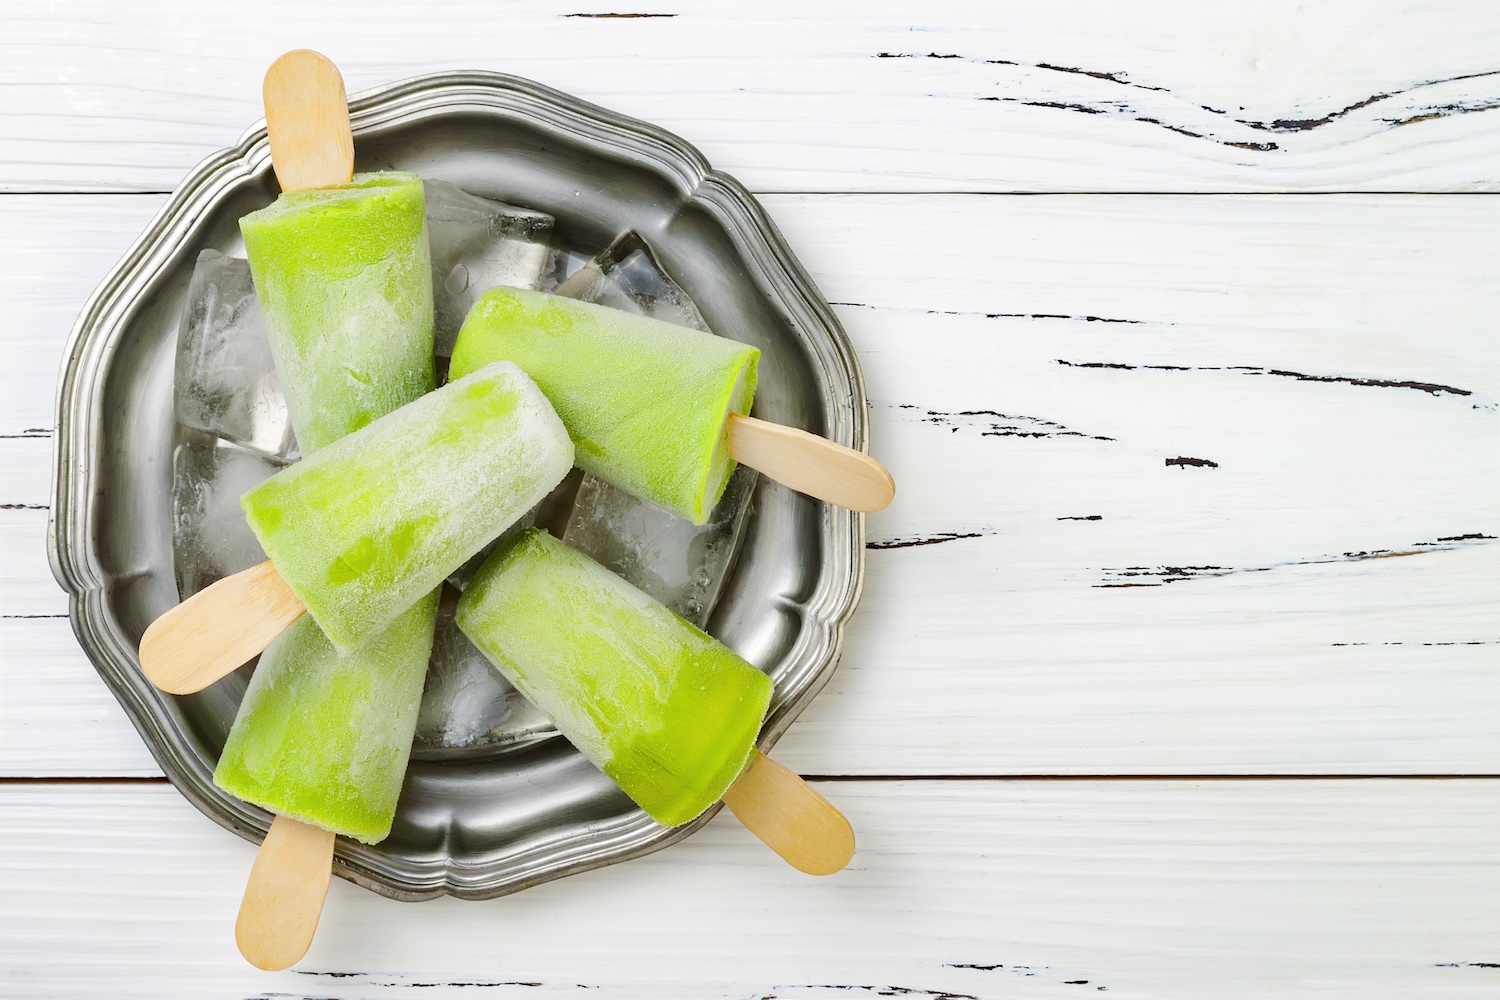 Sucettes glacées santé / green popsicles